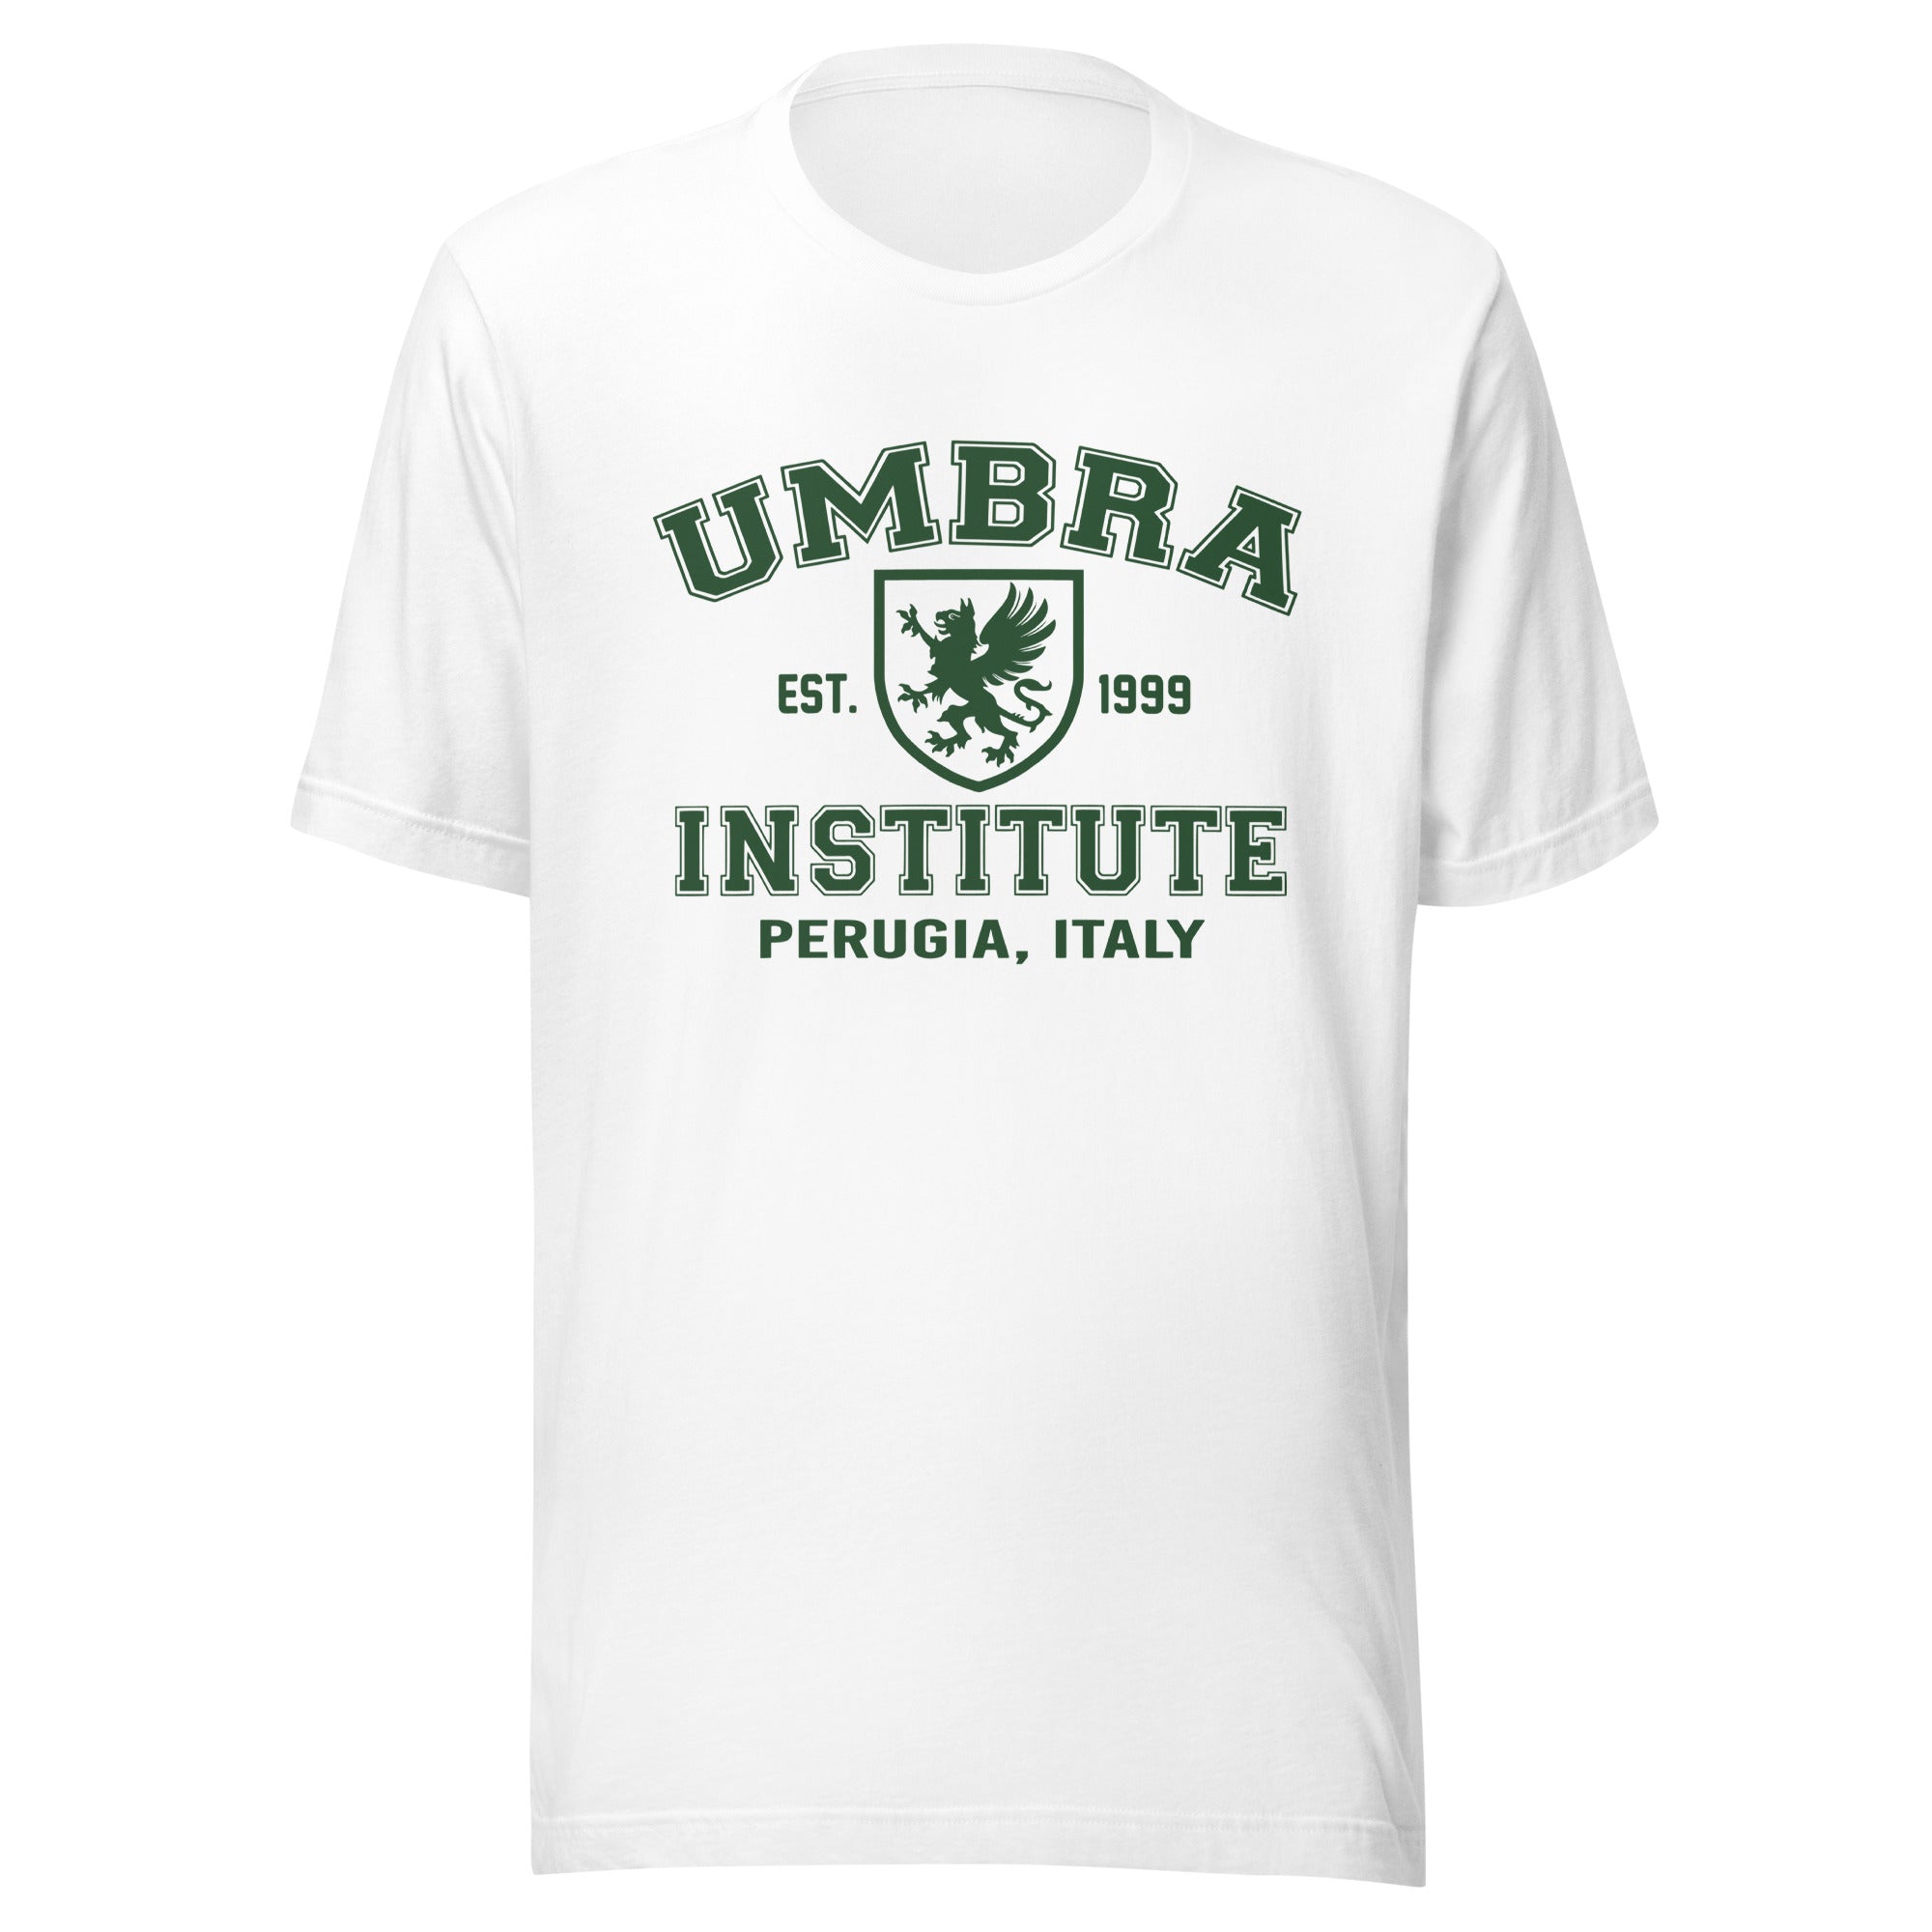 UI Unisex t-shirt v2 (NEW)